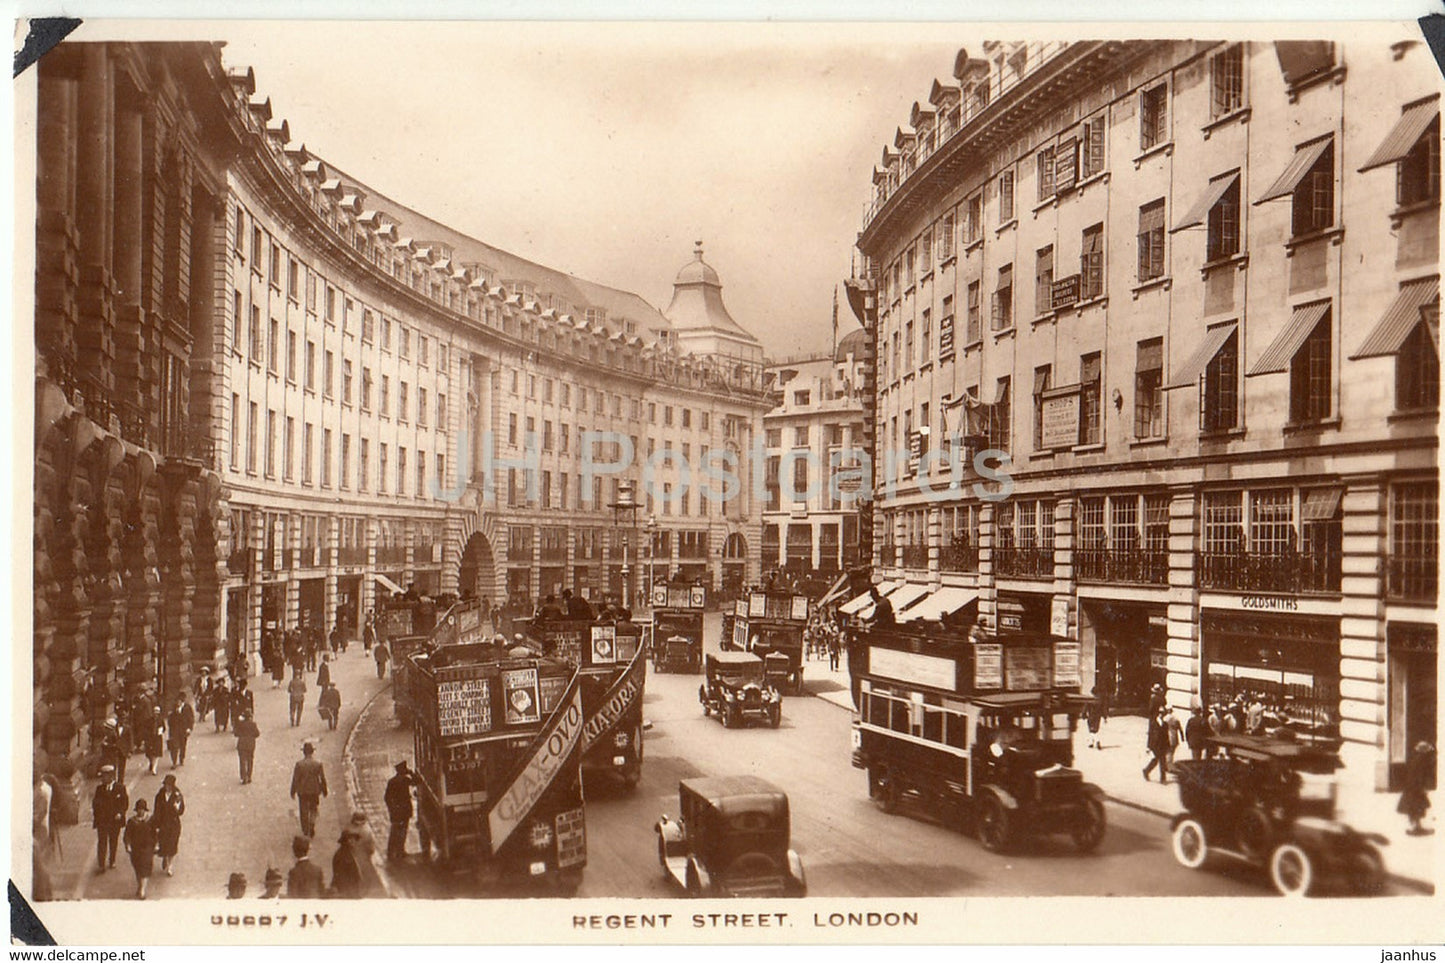 London - Regent Street - old car bus - old postcard - England - United Kingdom - unused - JH Postcards